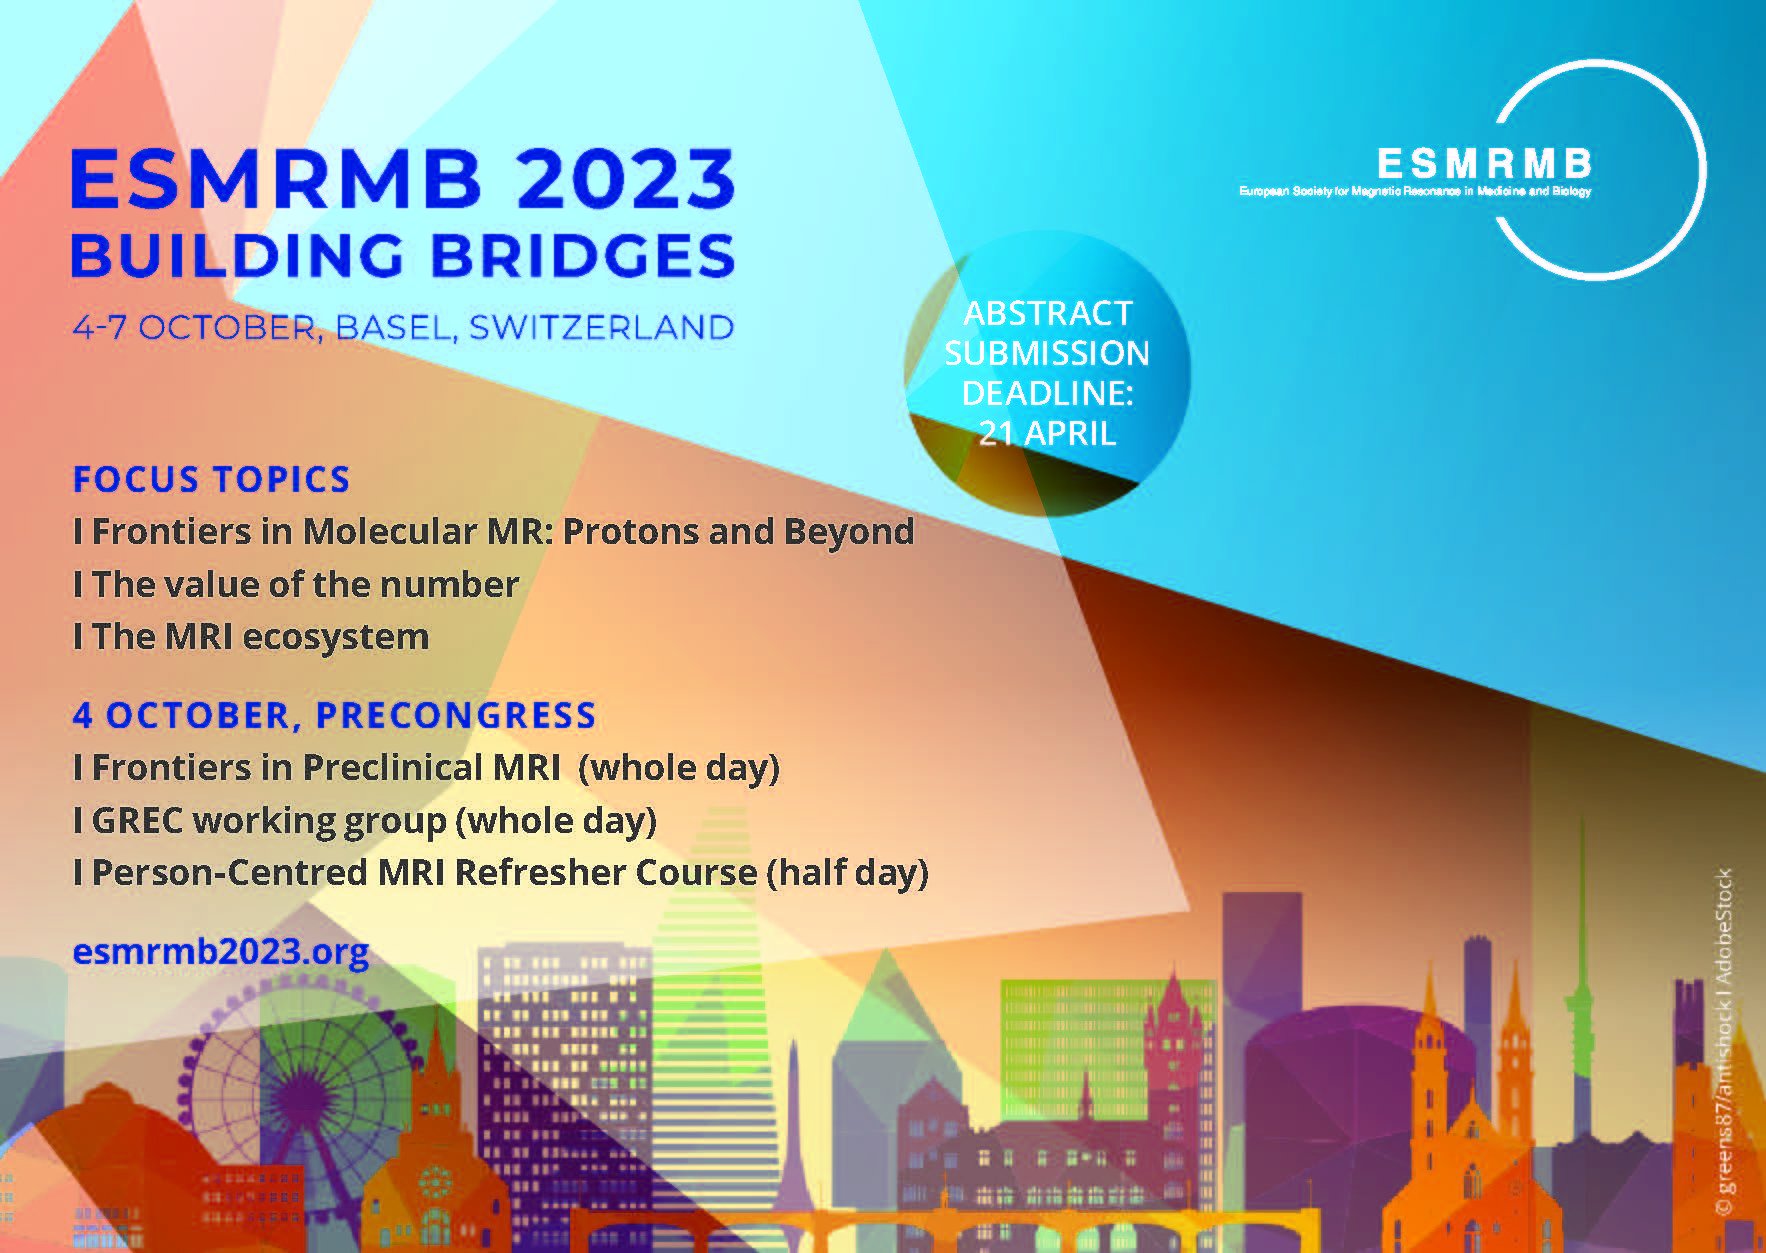 ESMRMB Congress 2023